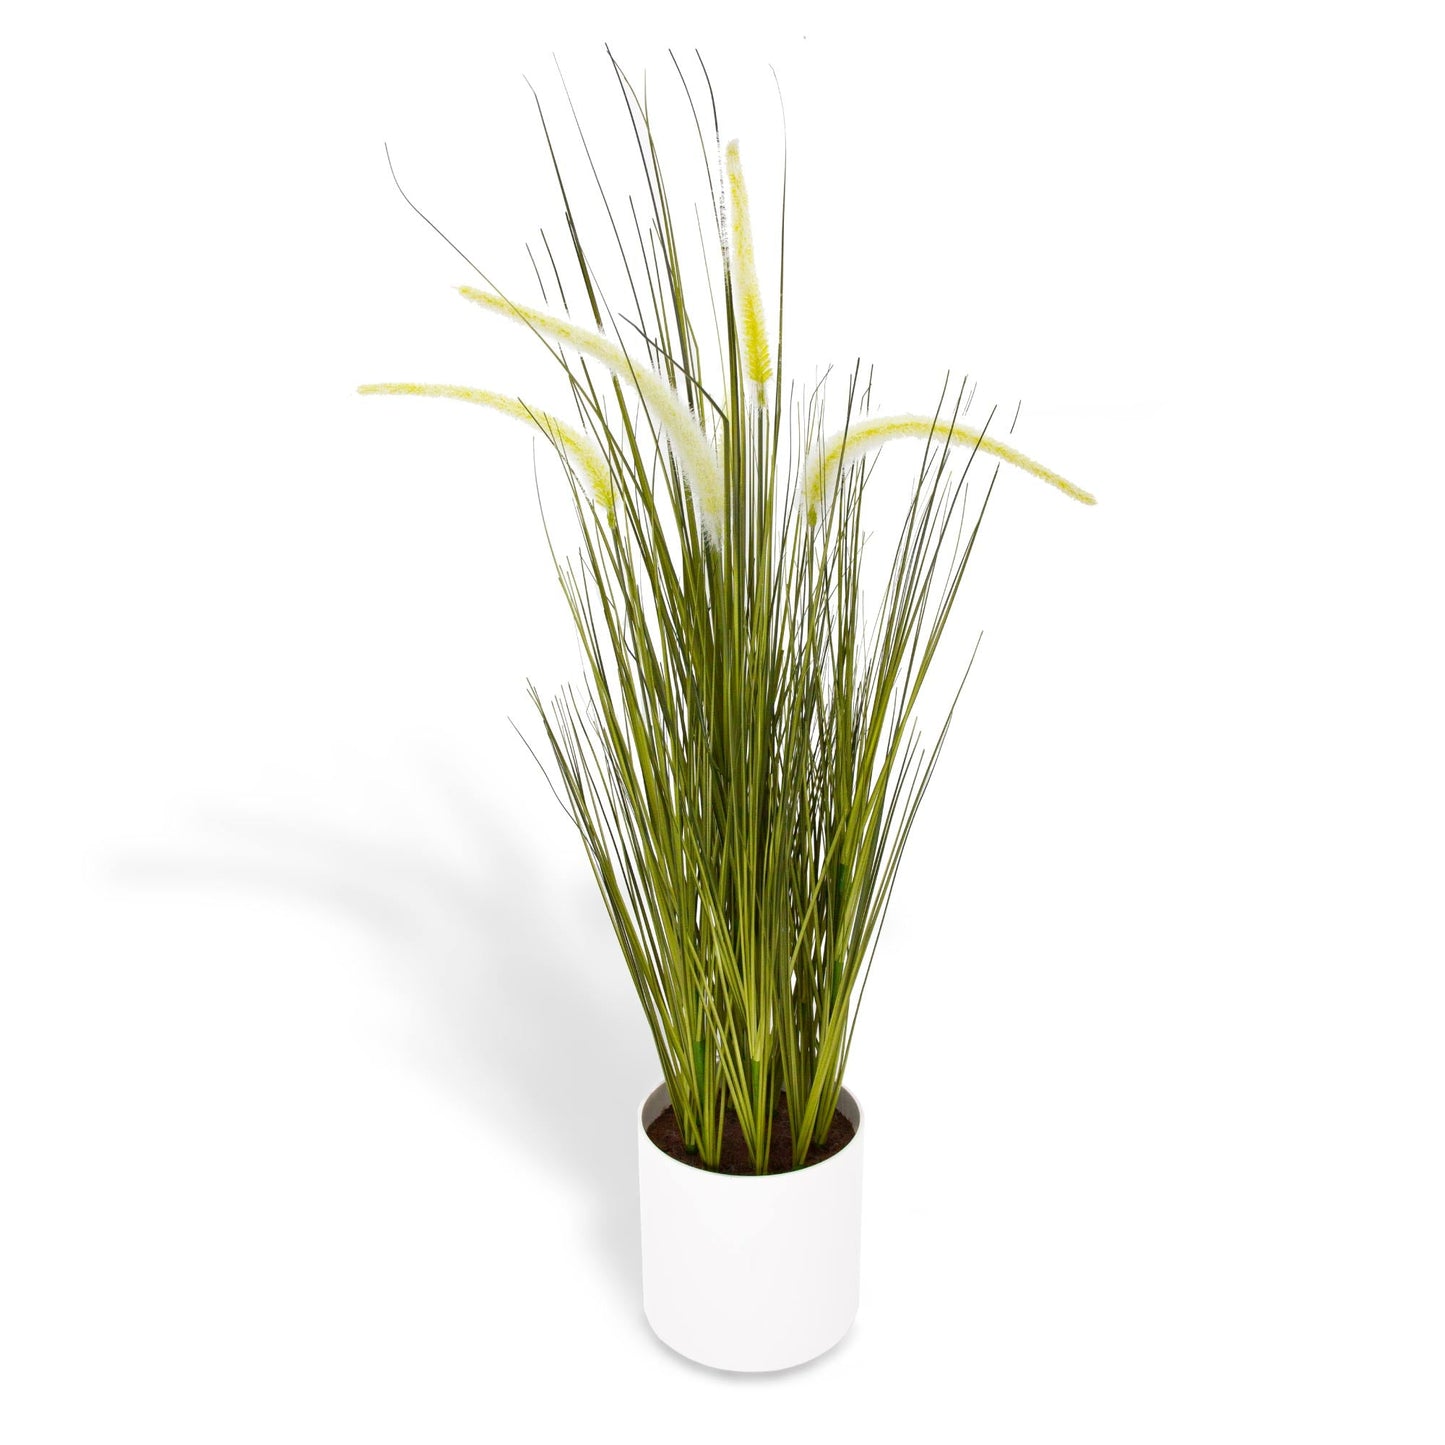 Artificial Pennusetum Grass in a Pot